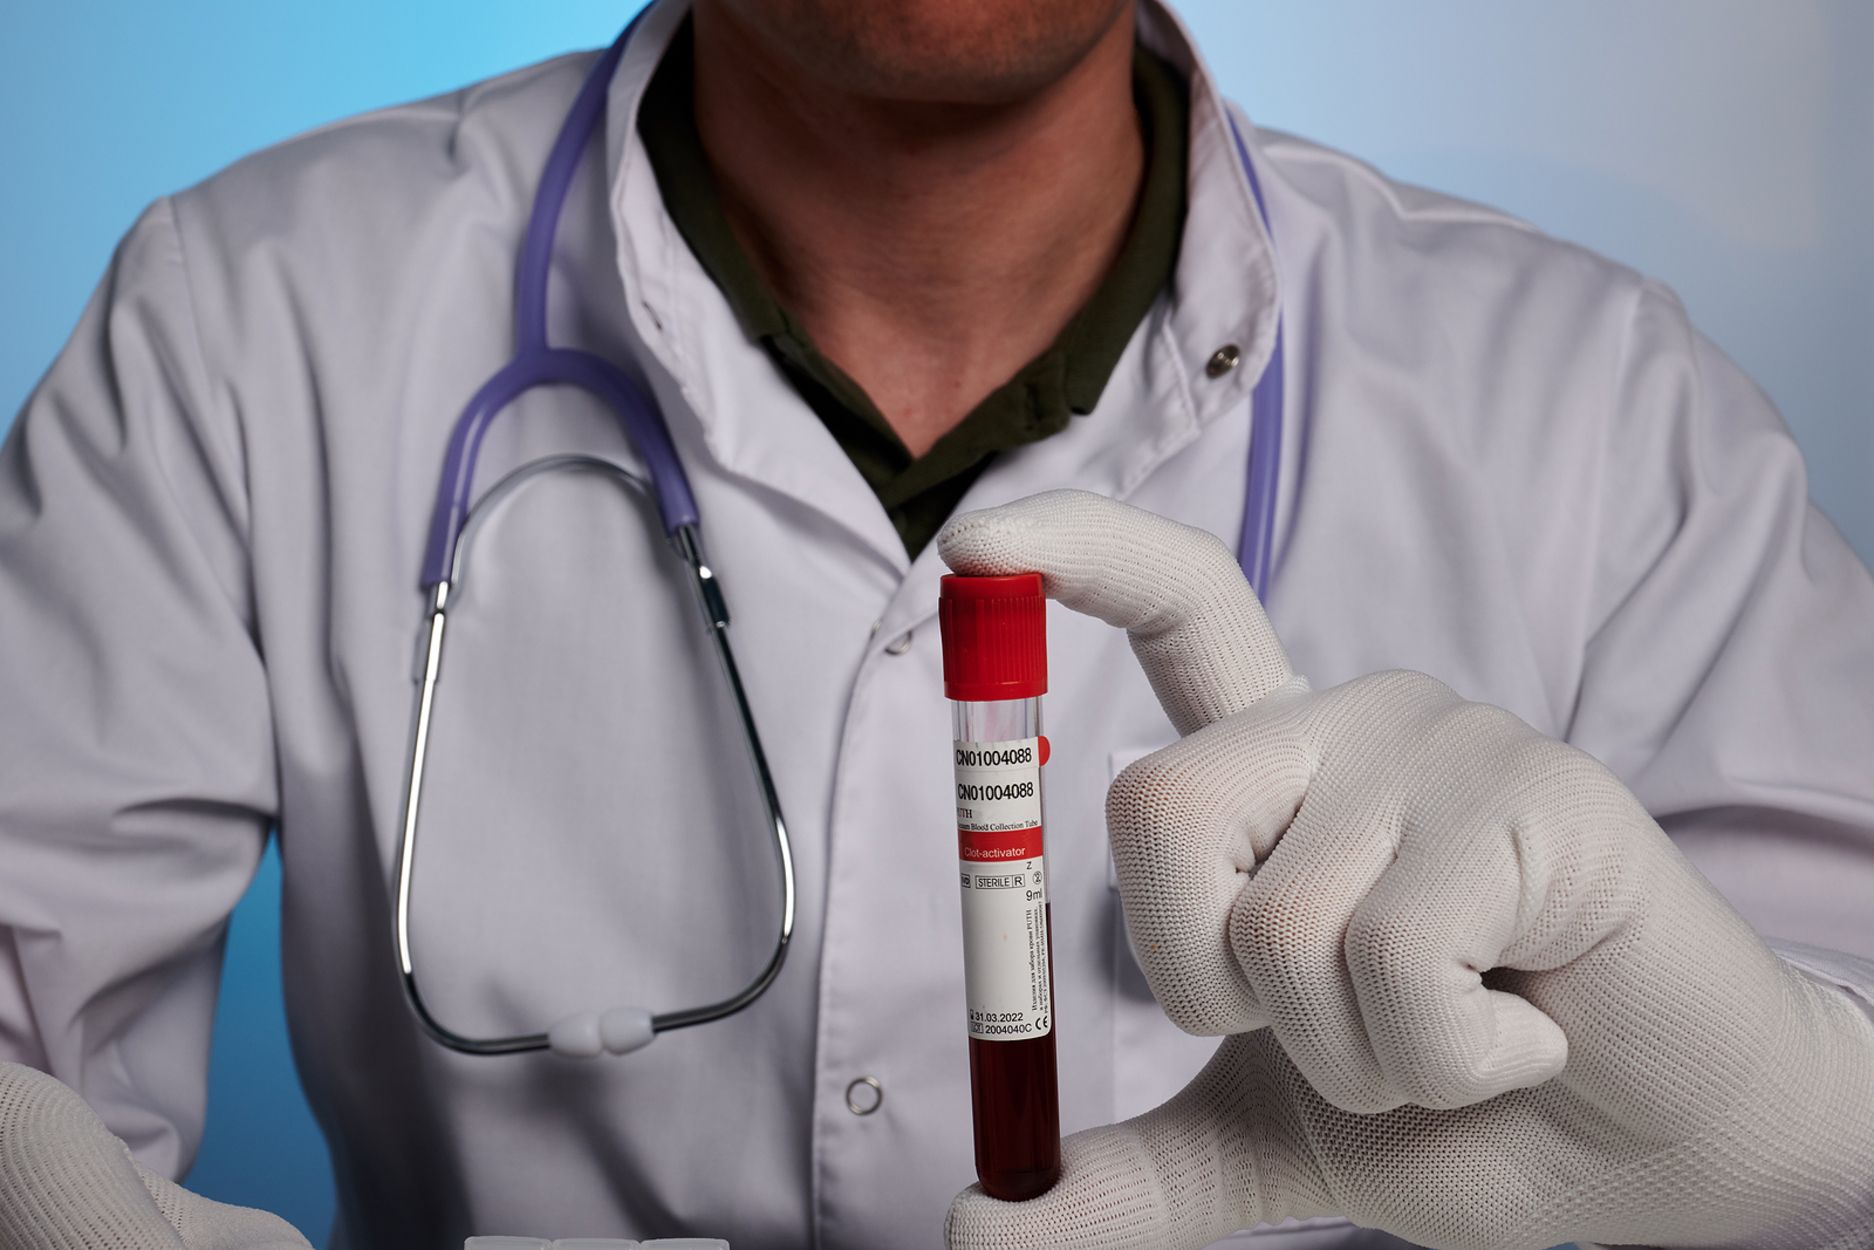 Un análisis de sangre consigue detectar el cáncer de colon en el 83% de los casos